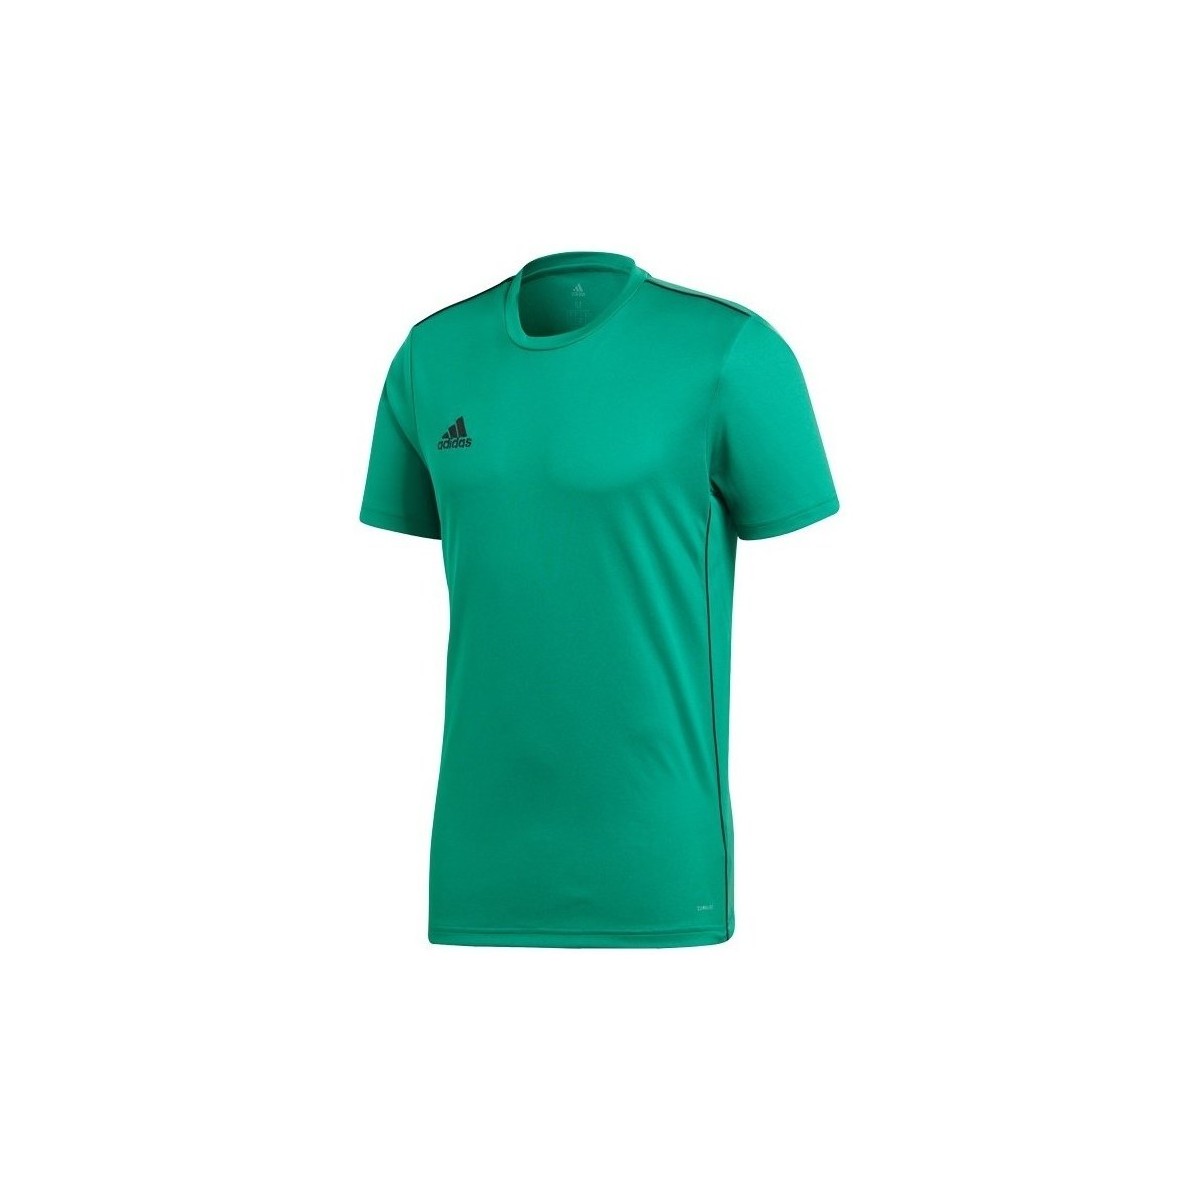 Kleidung Jungen T-Shirts adidas Originals Core 18 Grün